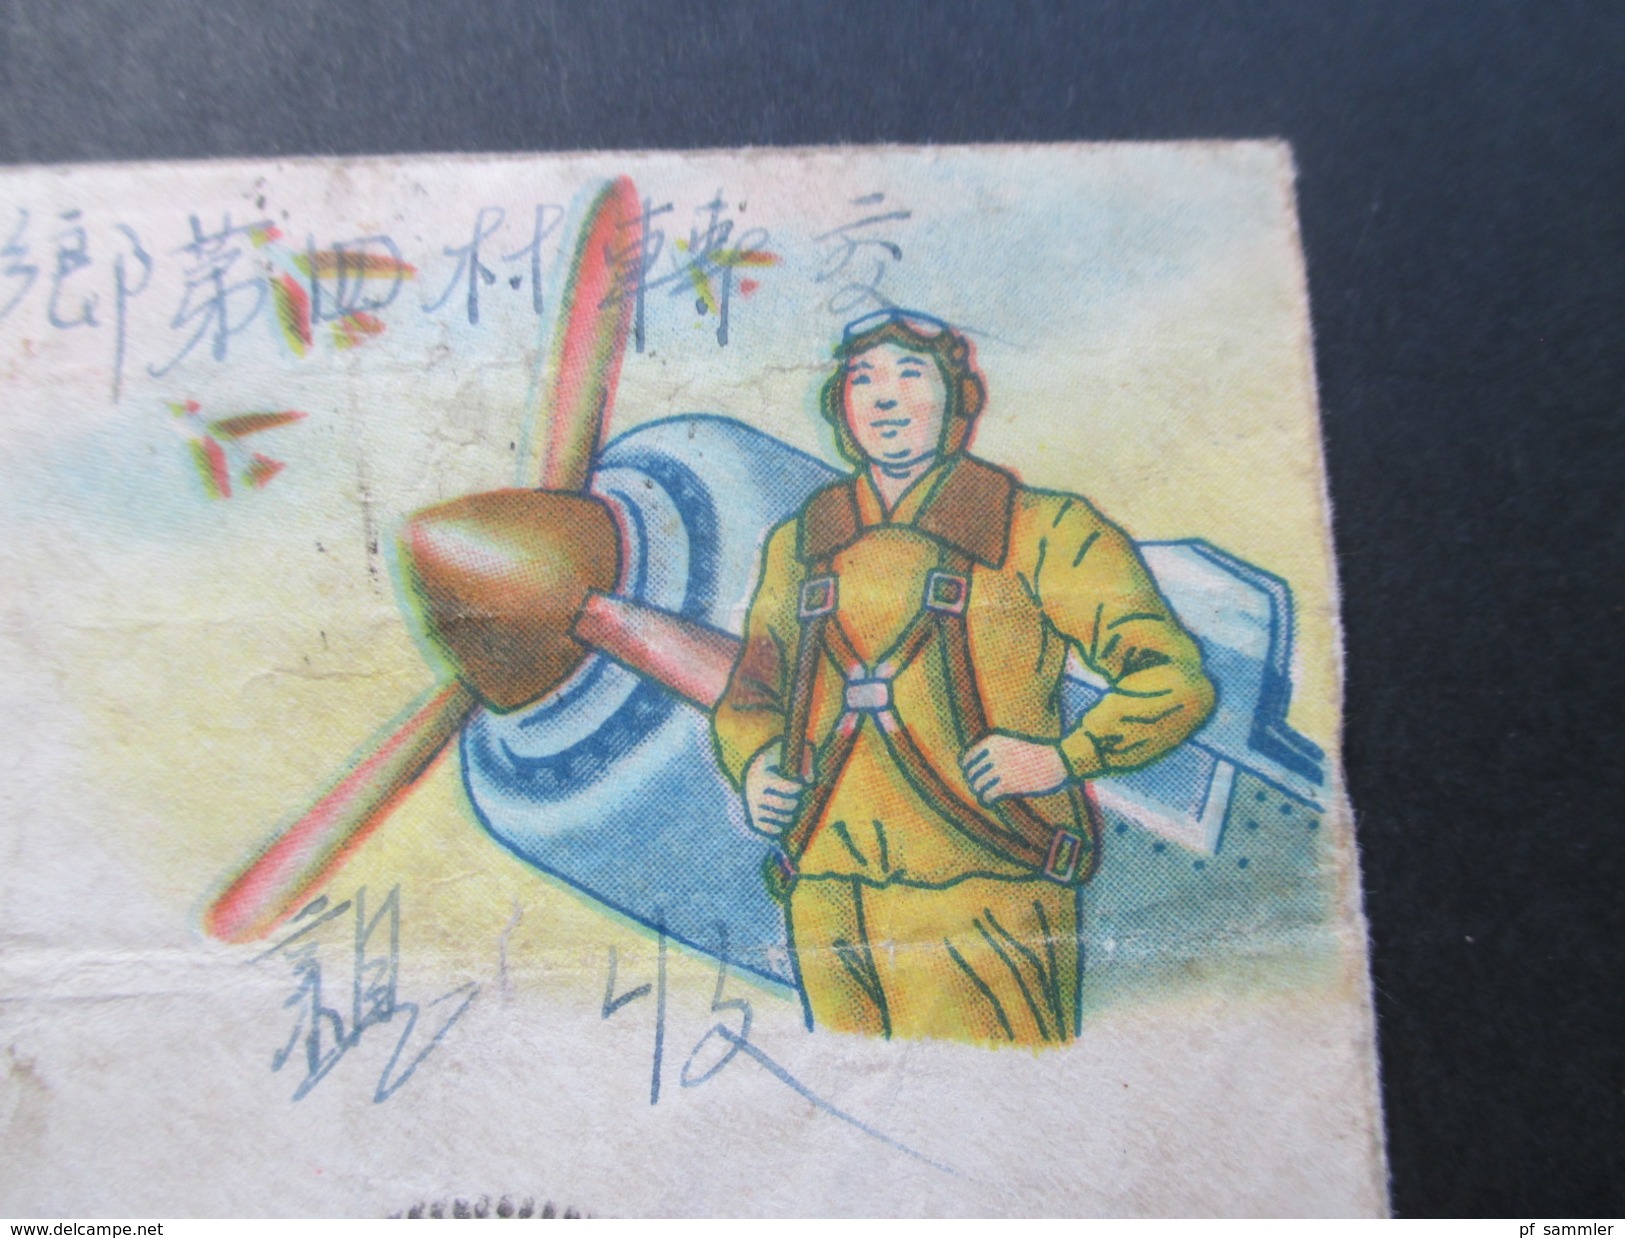 Volksrepublik China 1950er Jahre Militärpost 21 Belege! Viele Stempel / Zierumschläge. Seltene Stücke! Toller Posten!!